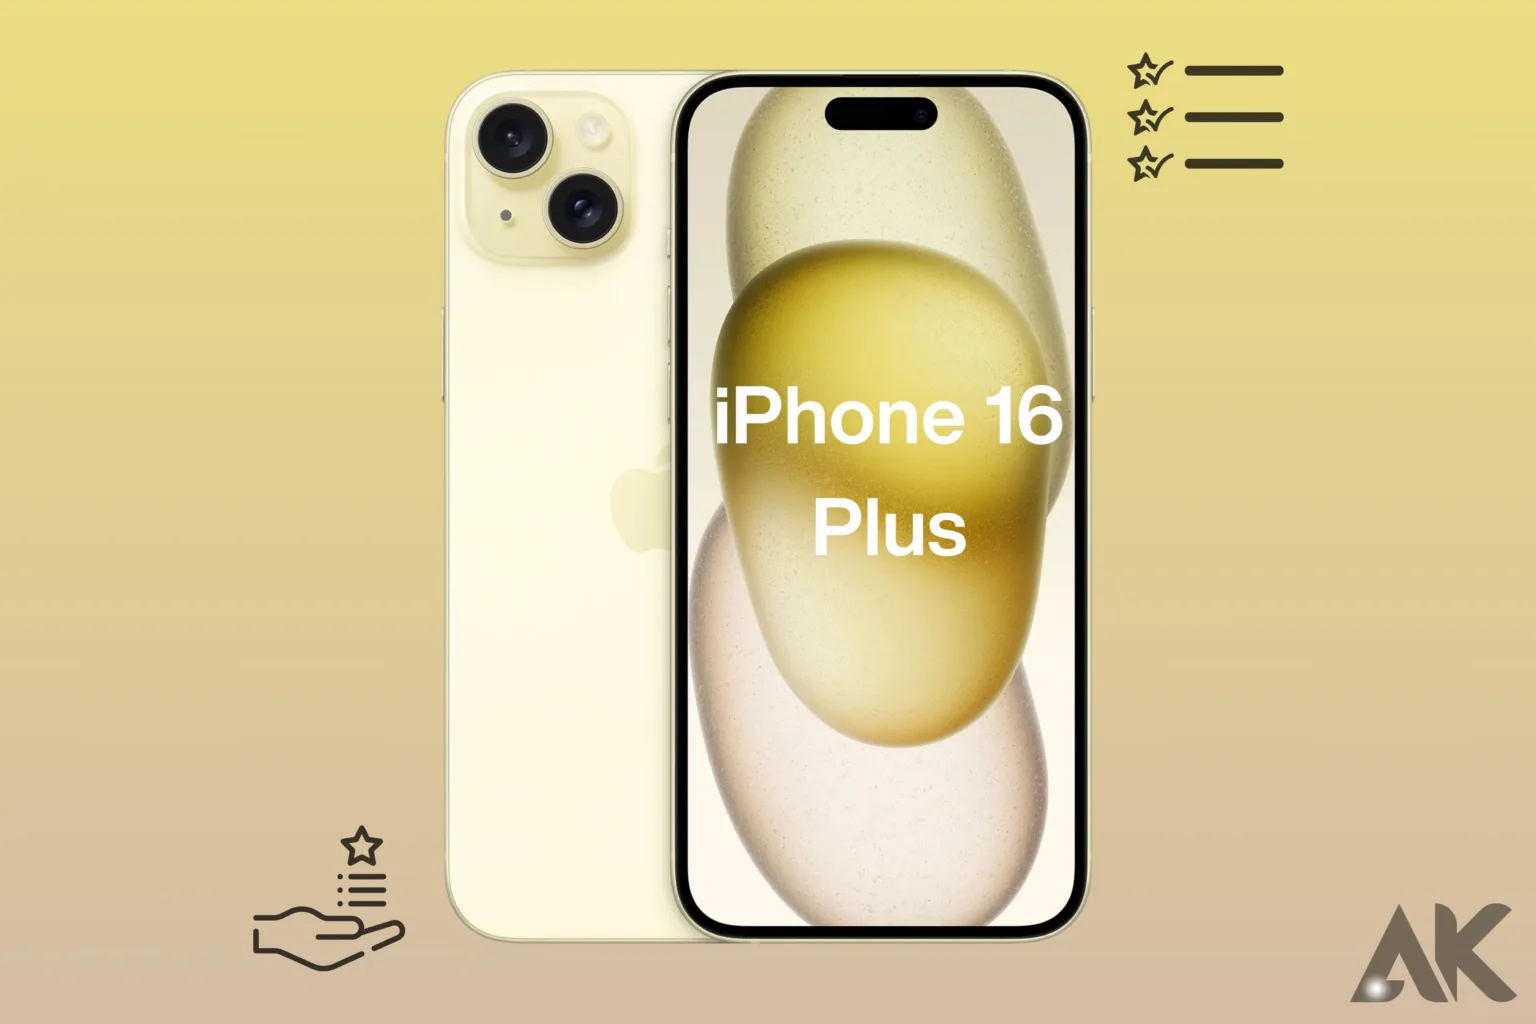 iPhone 16 Plus features